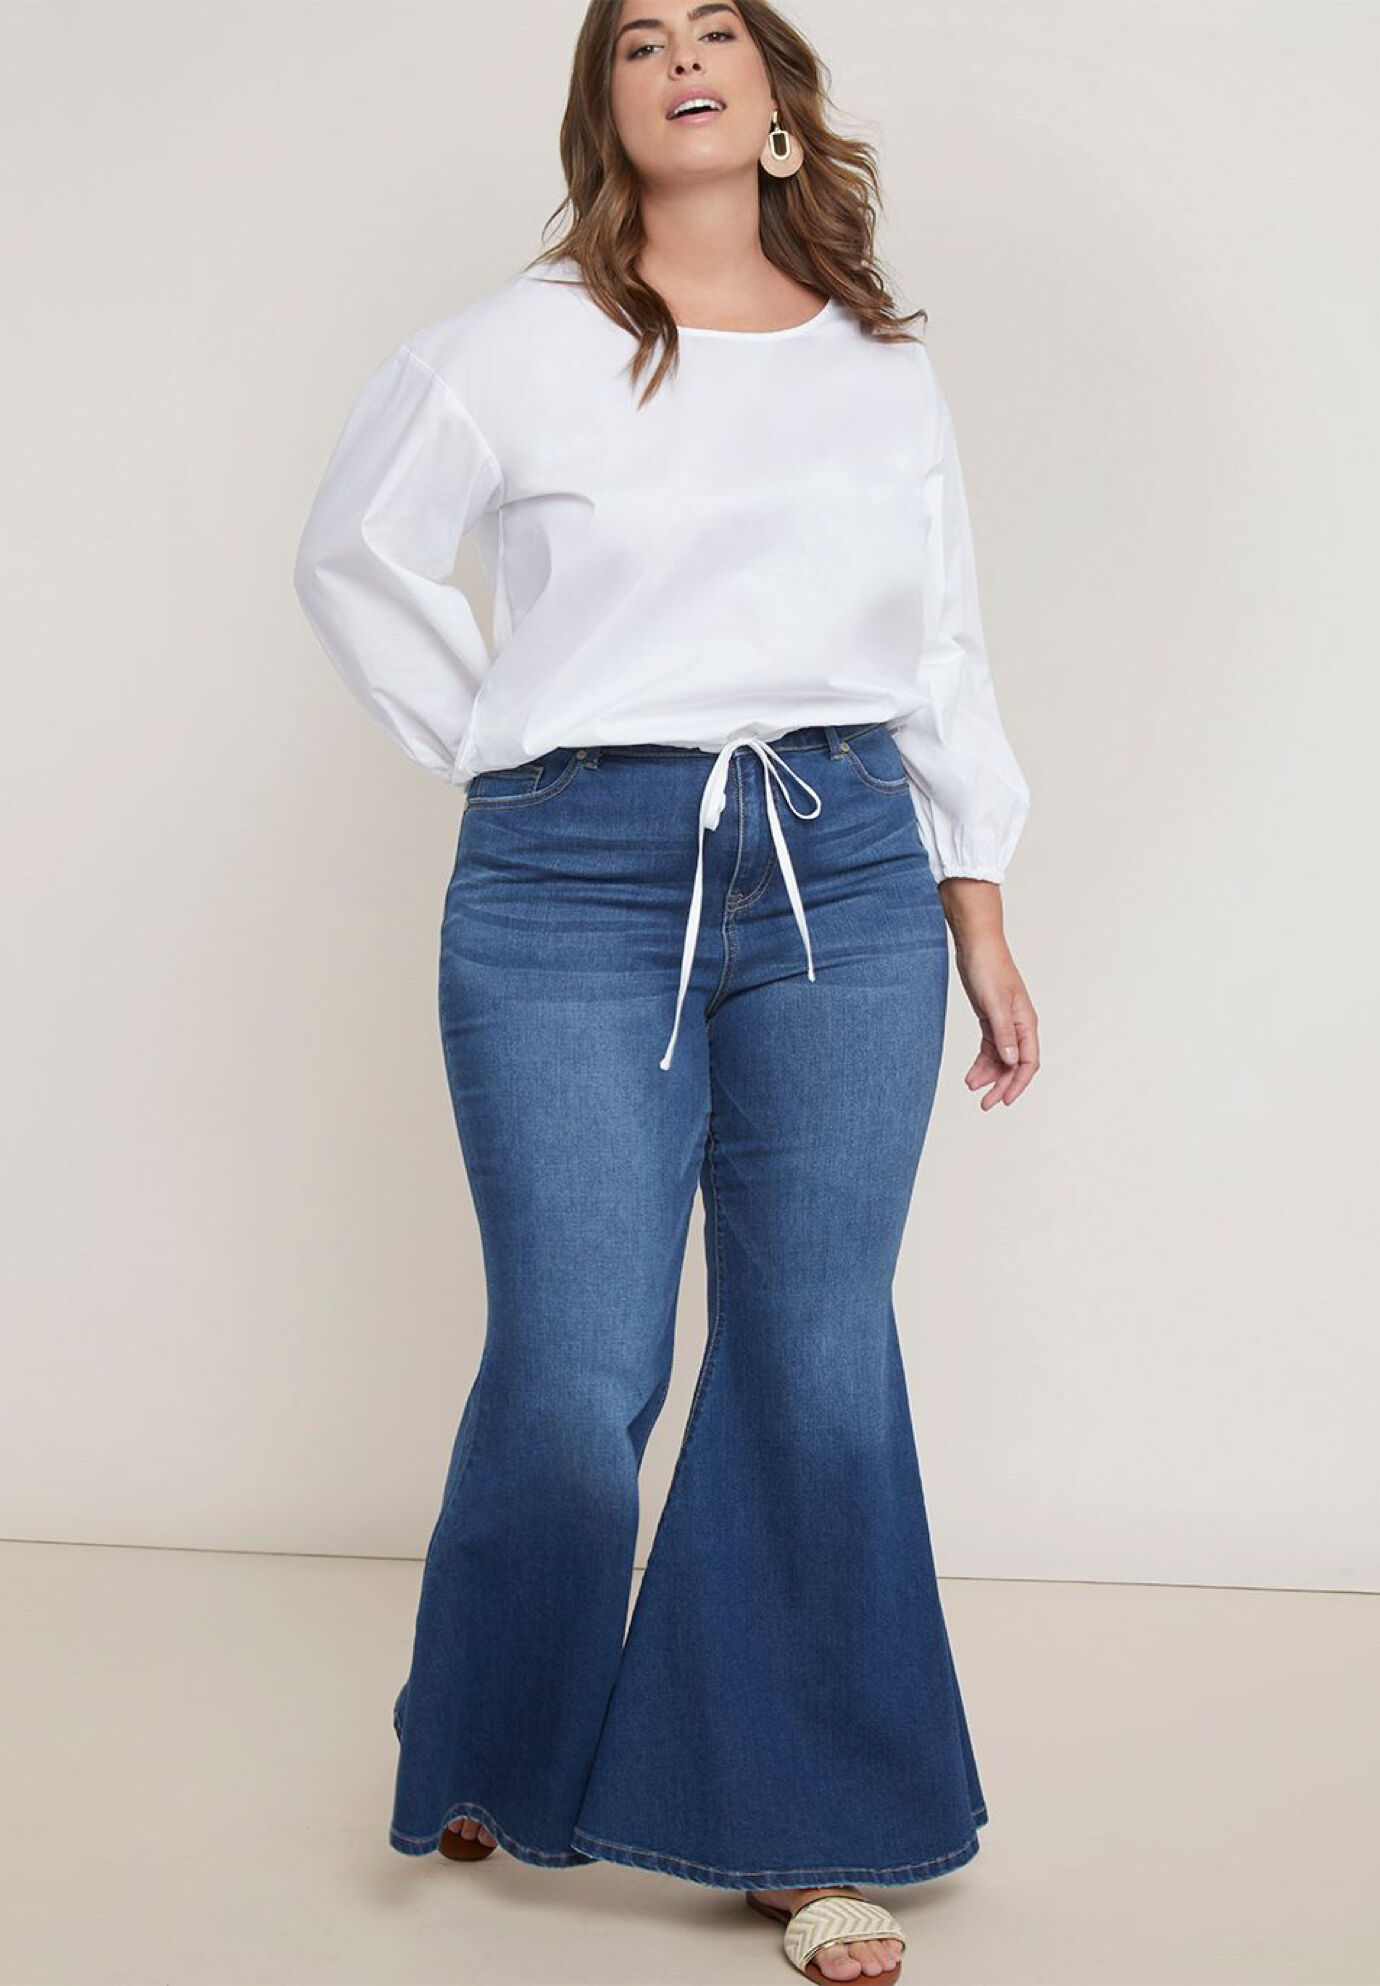 Women's High Waist Ripped Flare Bell Bottom Denim Pants Bootcut Jeans –  Lookbook Store